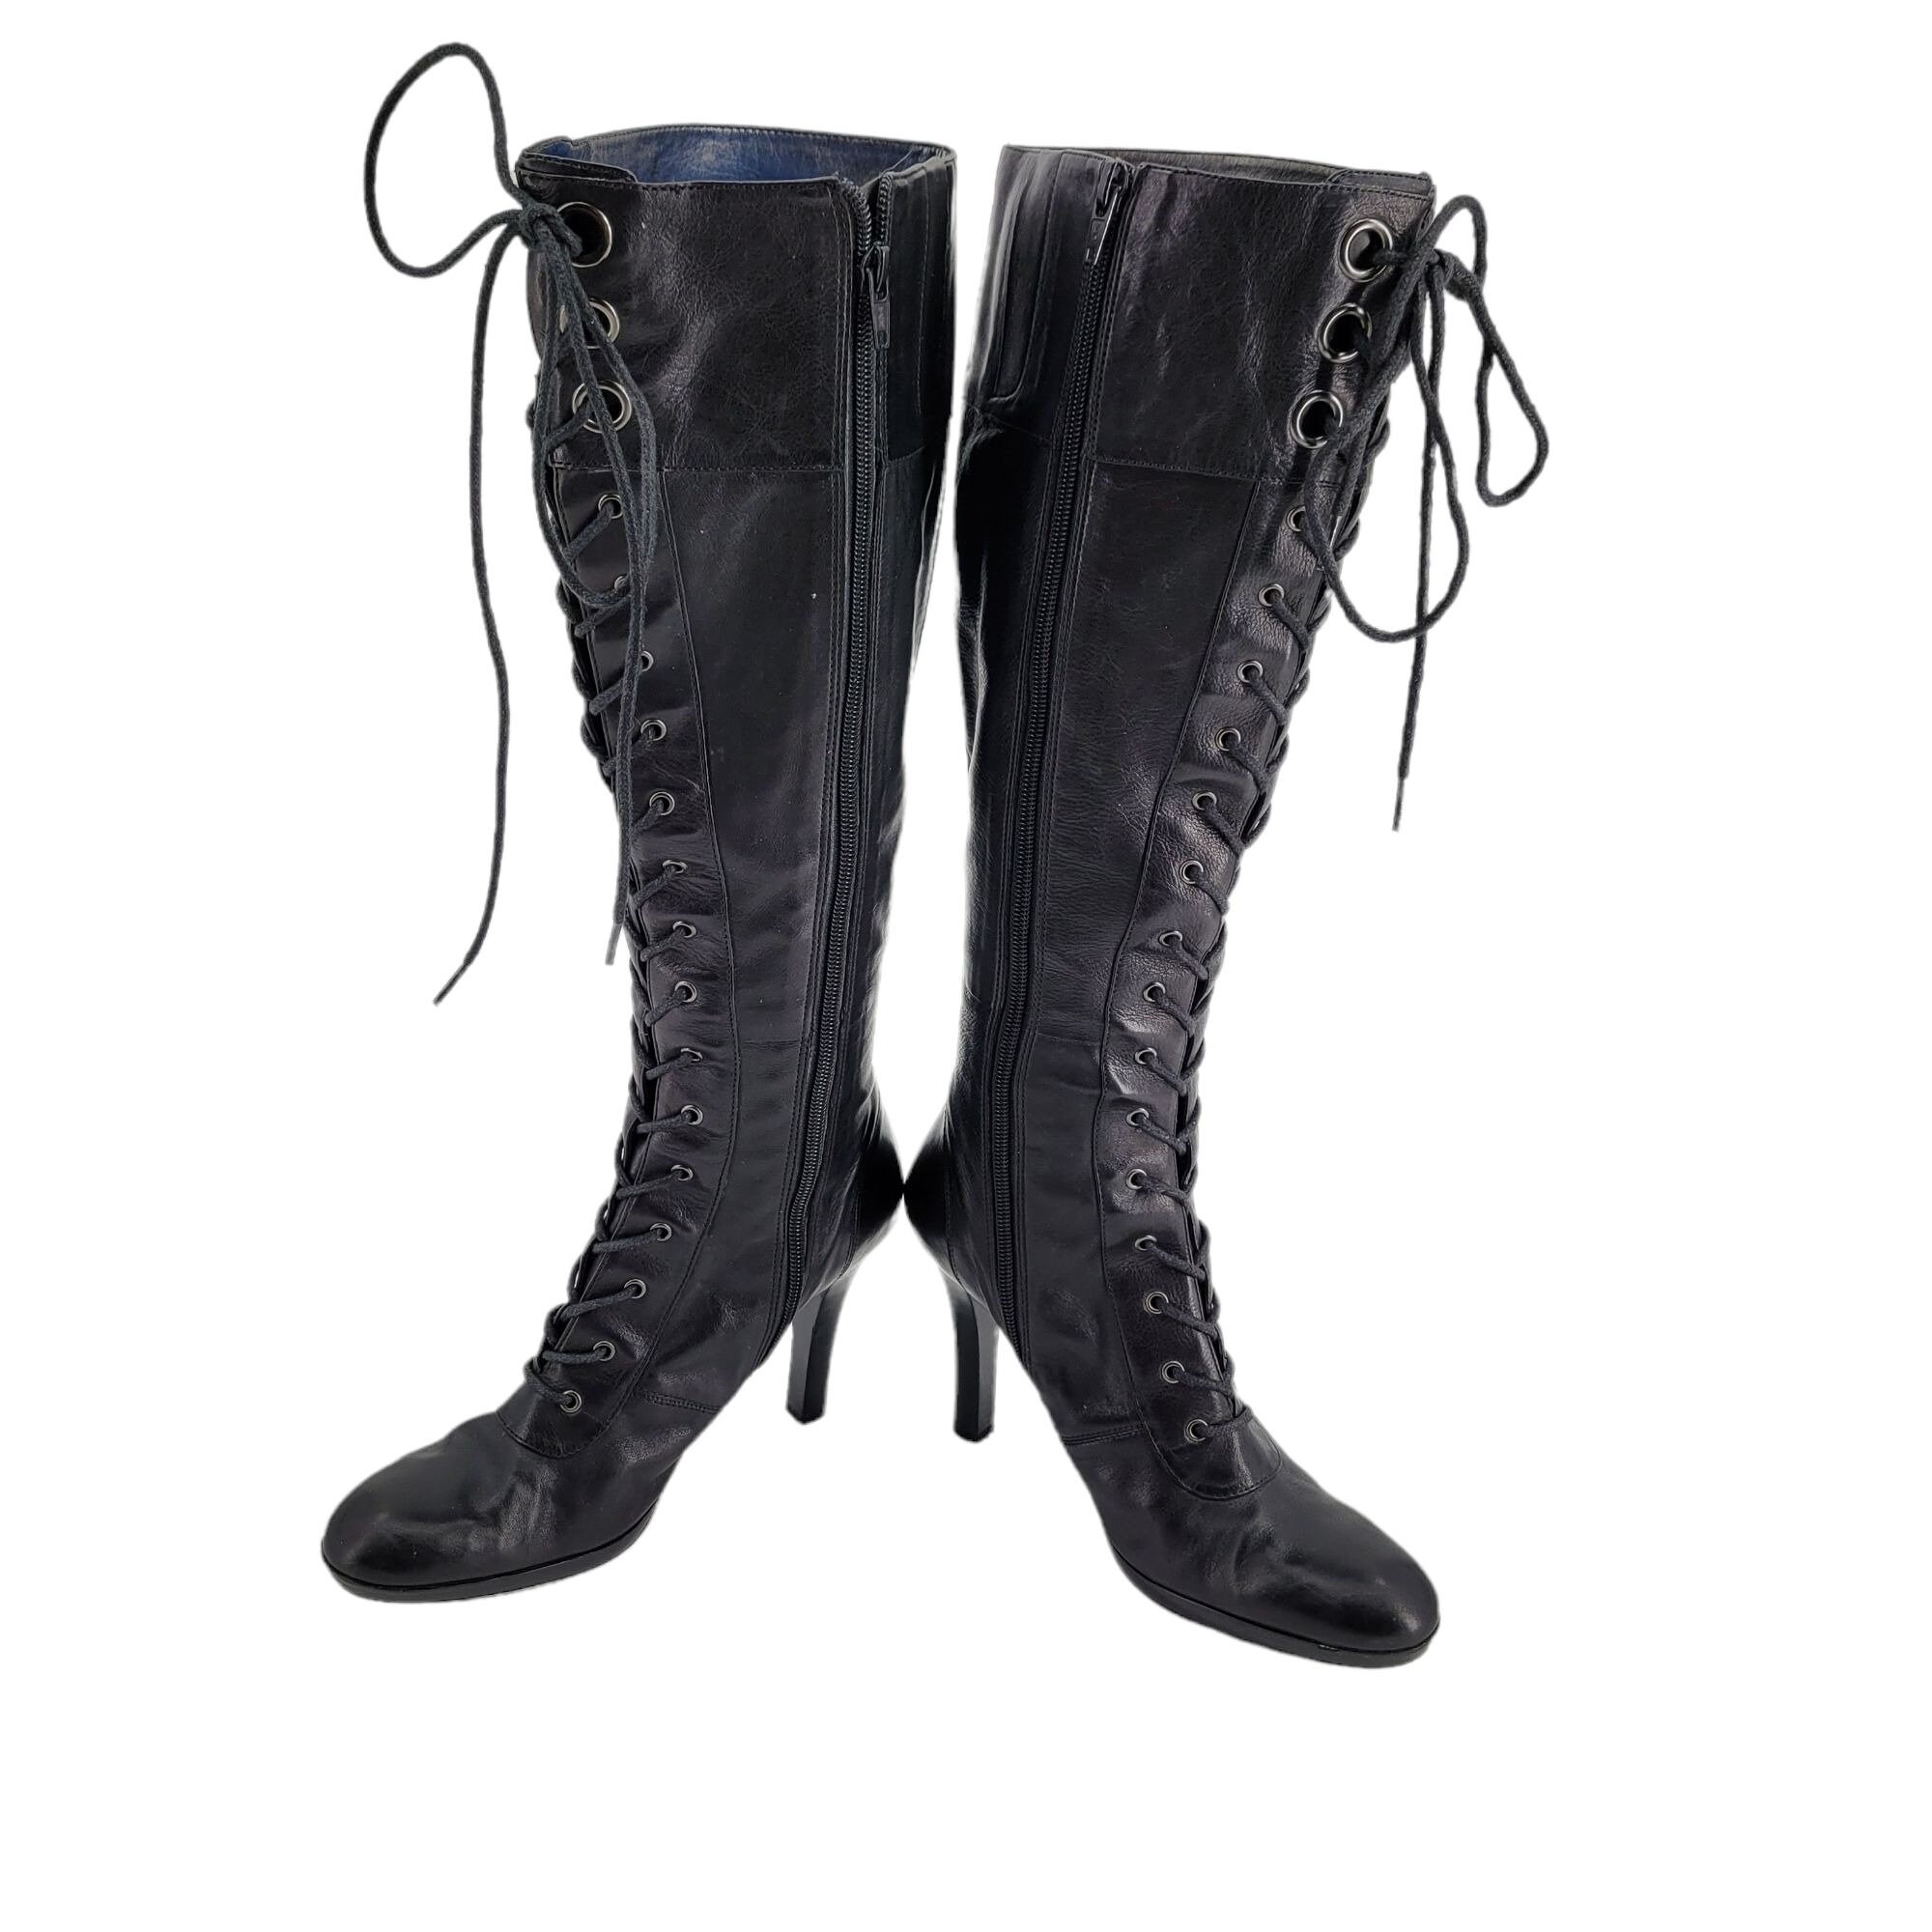 Black suede side zip granny boots //  size 9 // Black faux suede side zip steam punk  boots Schoenen damesschoenen Laarzen 